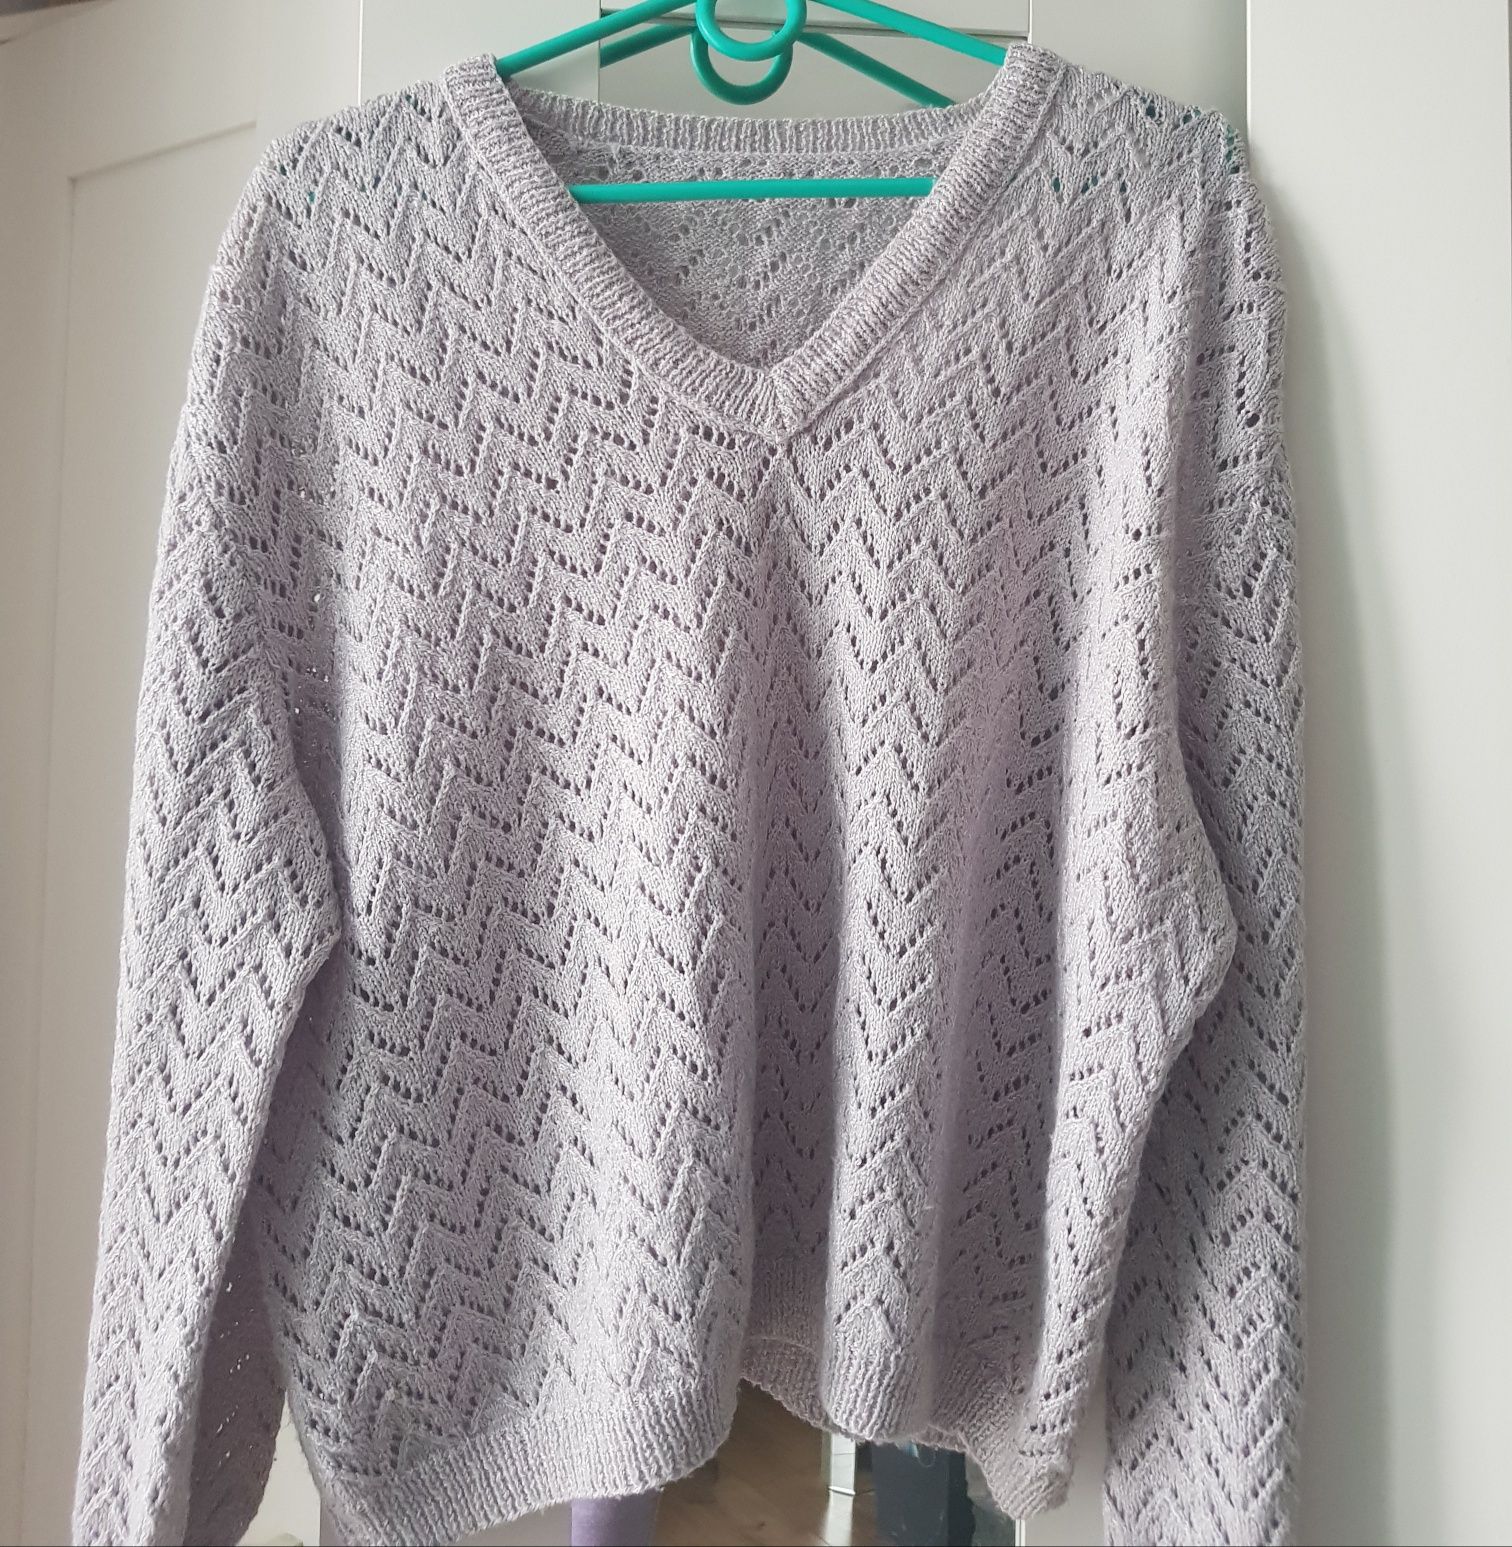 Ażurowy sweter damski Top Vintage rozmiar S/M/L.